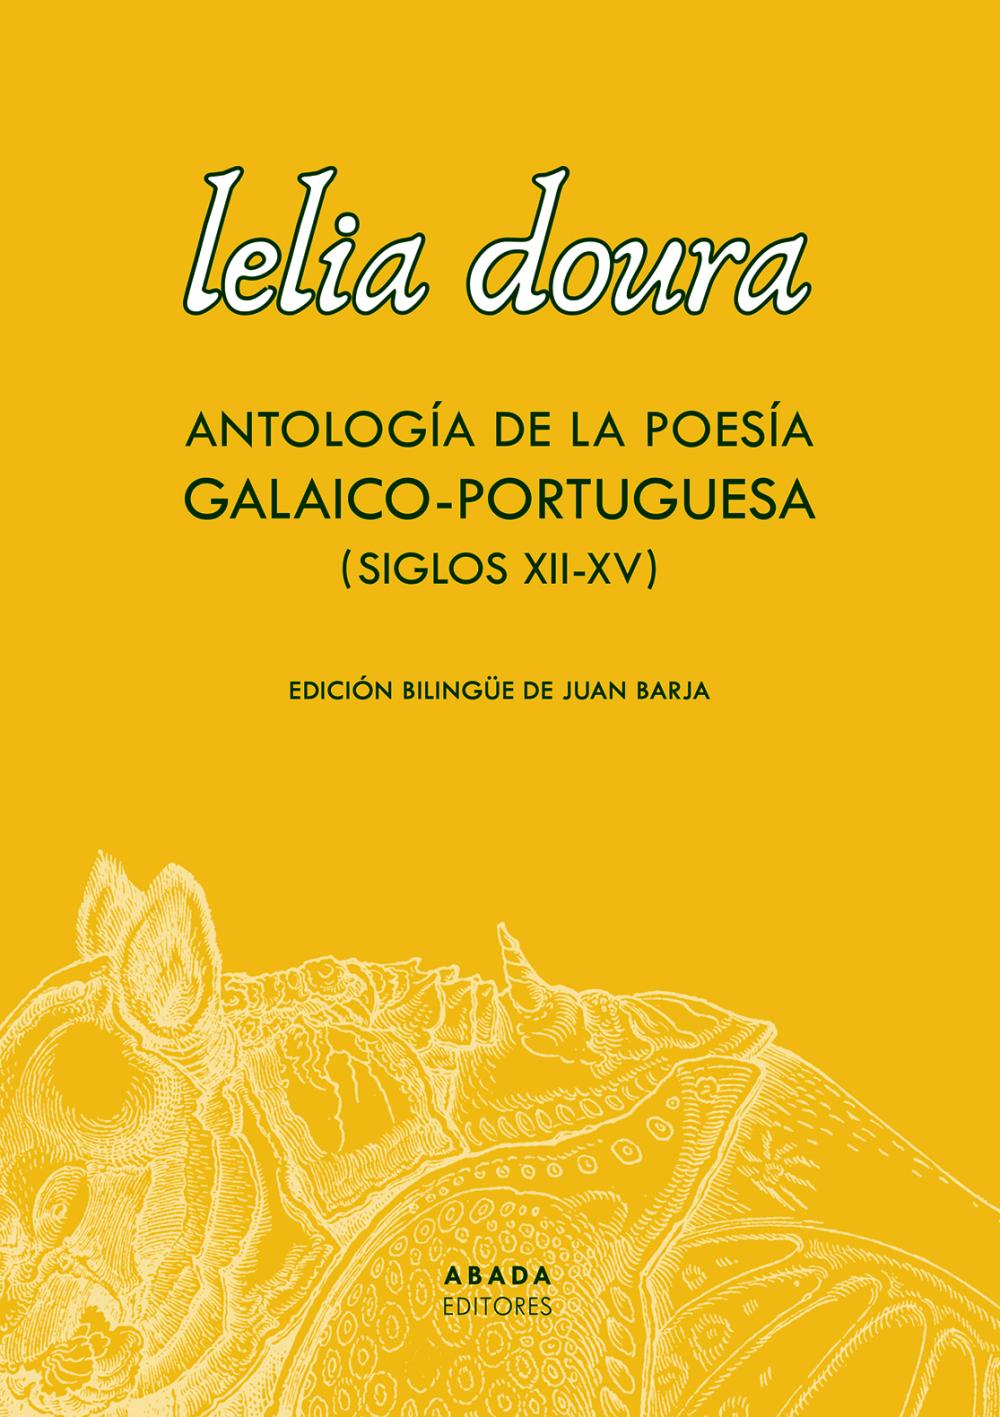 Lelia doura. Antología de la poesía galaico-portuguesa (siglo XII-XV)